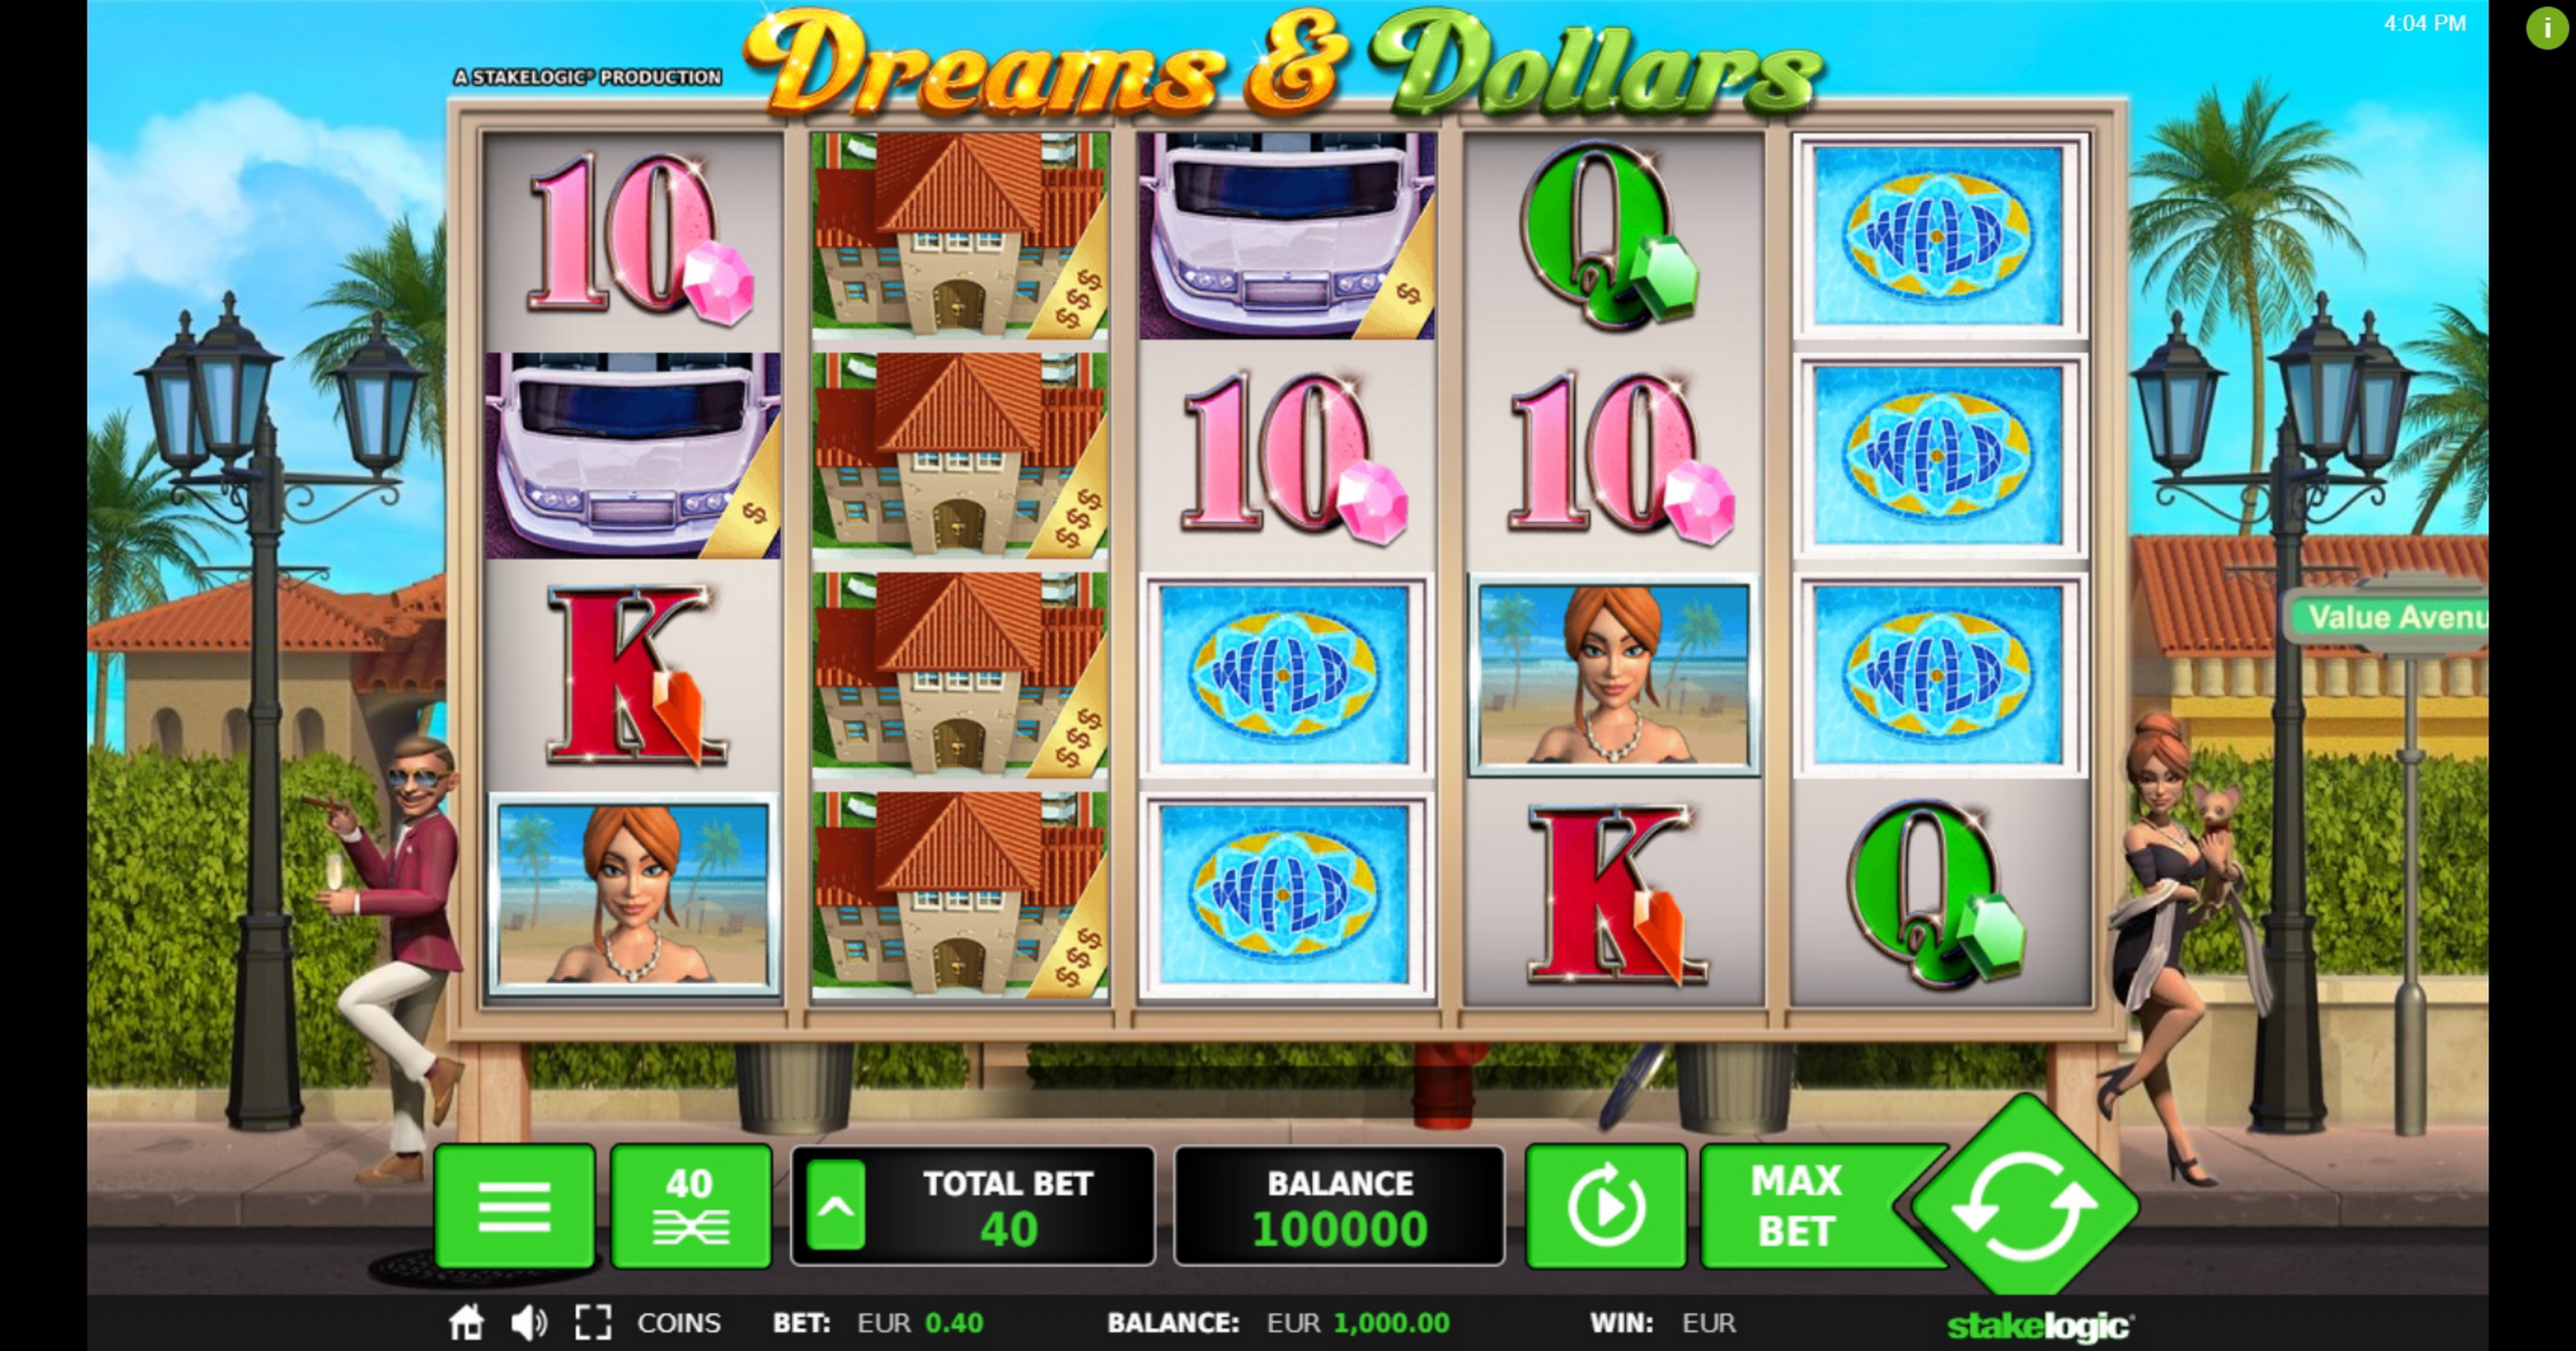 Reels in Dreams & Dollars Slot Game by Stakelogic